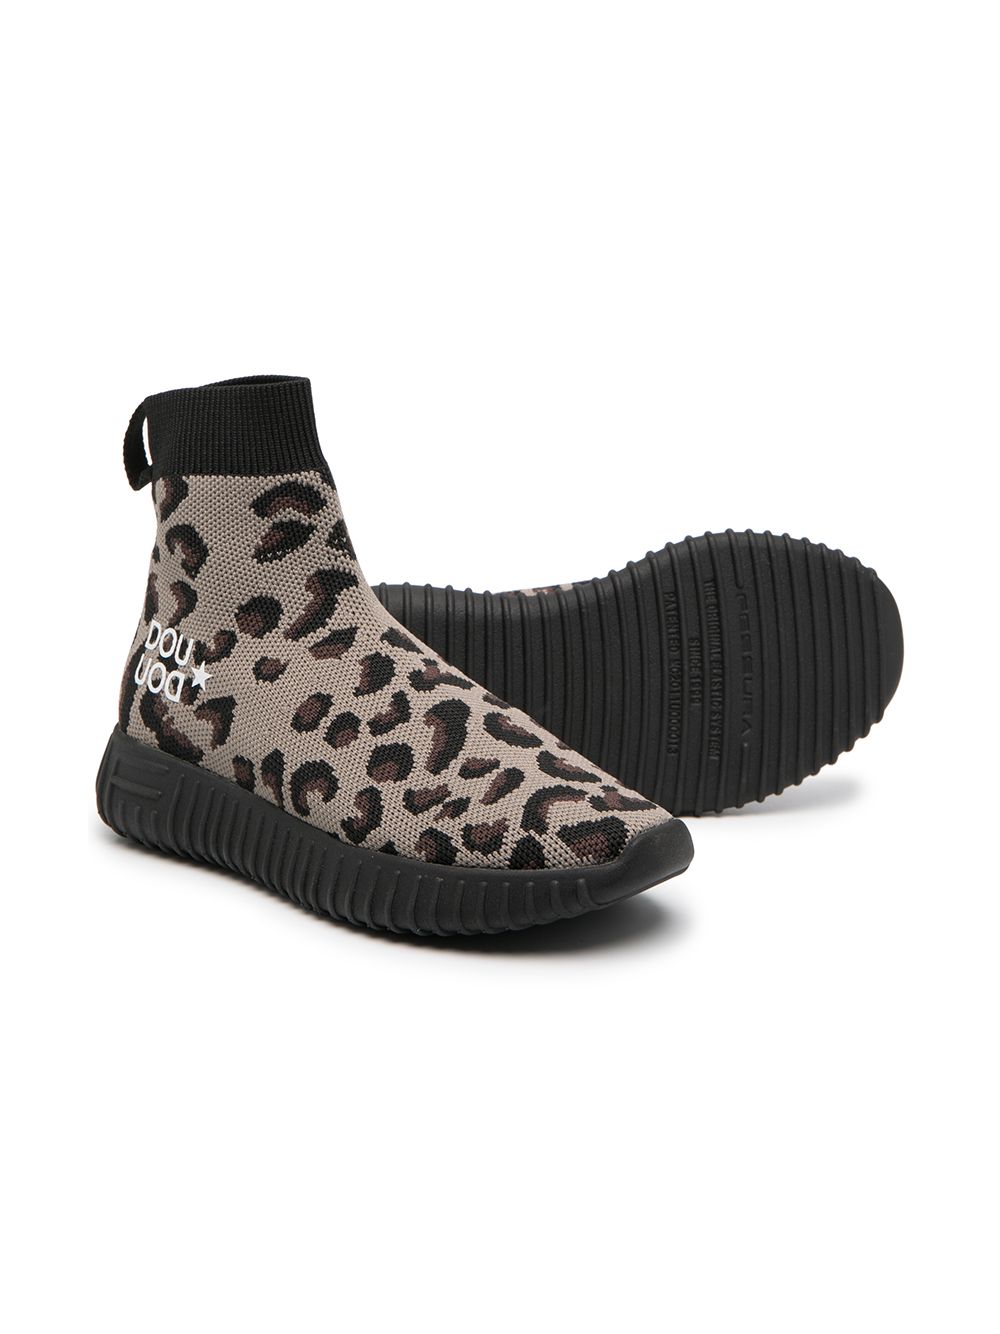 фото Douuod kids кроссовки-носки с леопардовым принтом